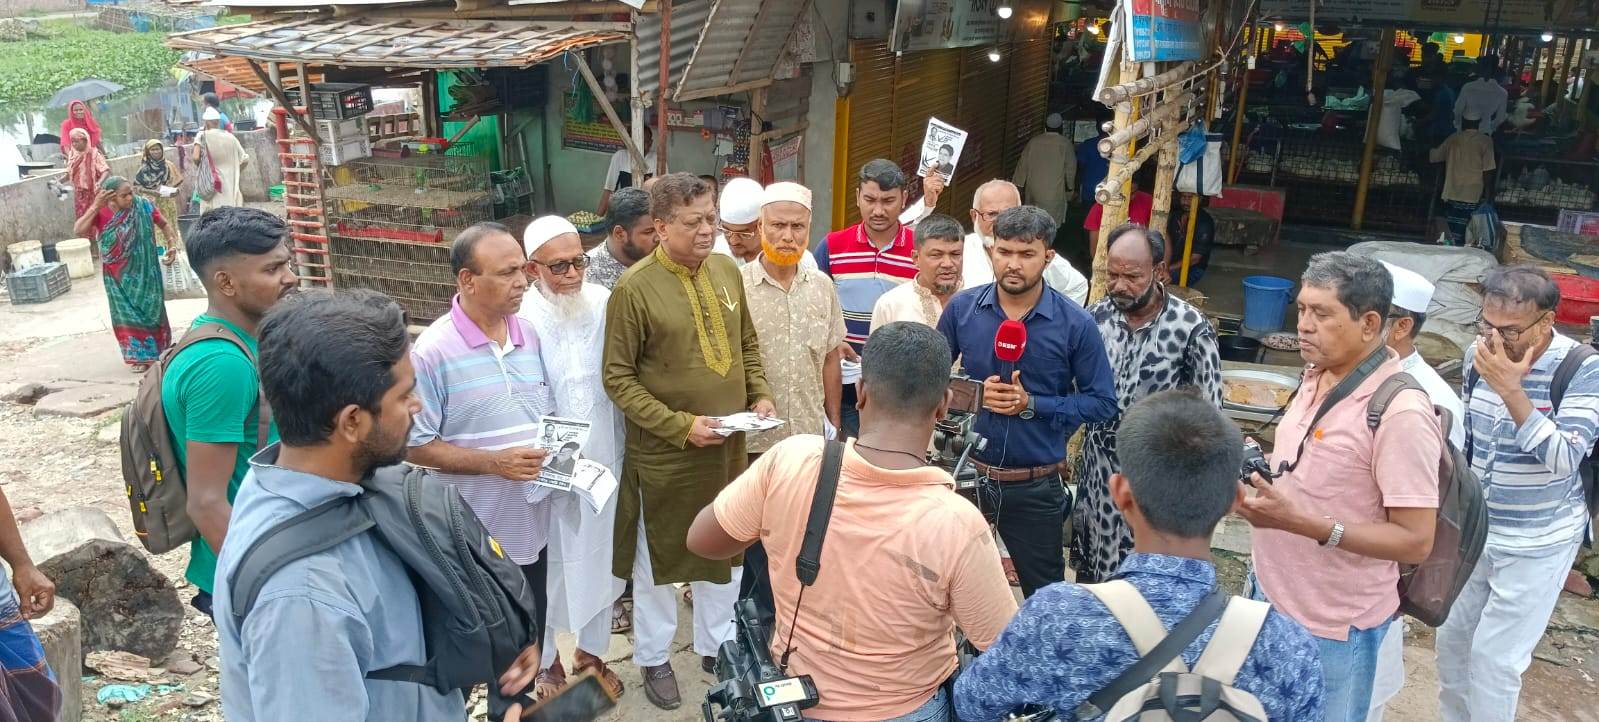 খুলনা সিটি কর্পোরেশন নির্বাচন : লাঙ্গল প্রতীক নিয়ে প্রচার প্রচারণায় শফিকুল ইসলাম মধু